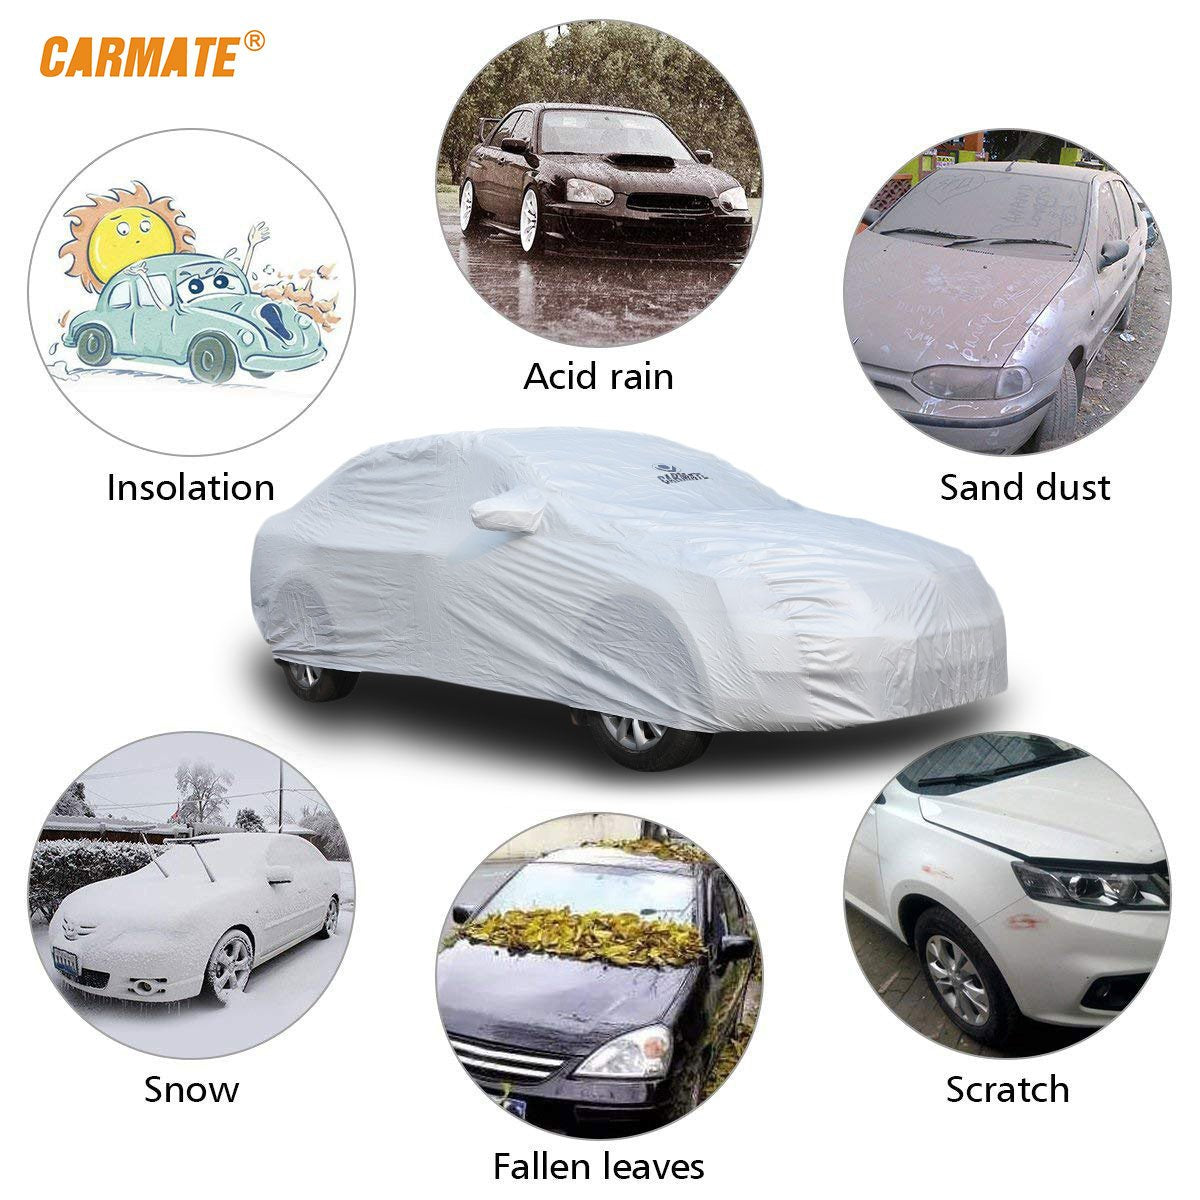 Carmate Premium Car Body Cover Silver Matty (Silver) for Toyota - Urban Cruiser - CARMATE®